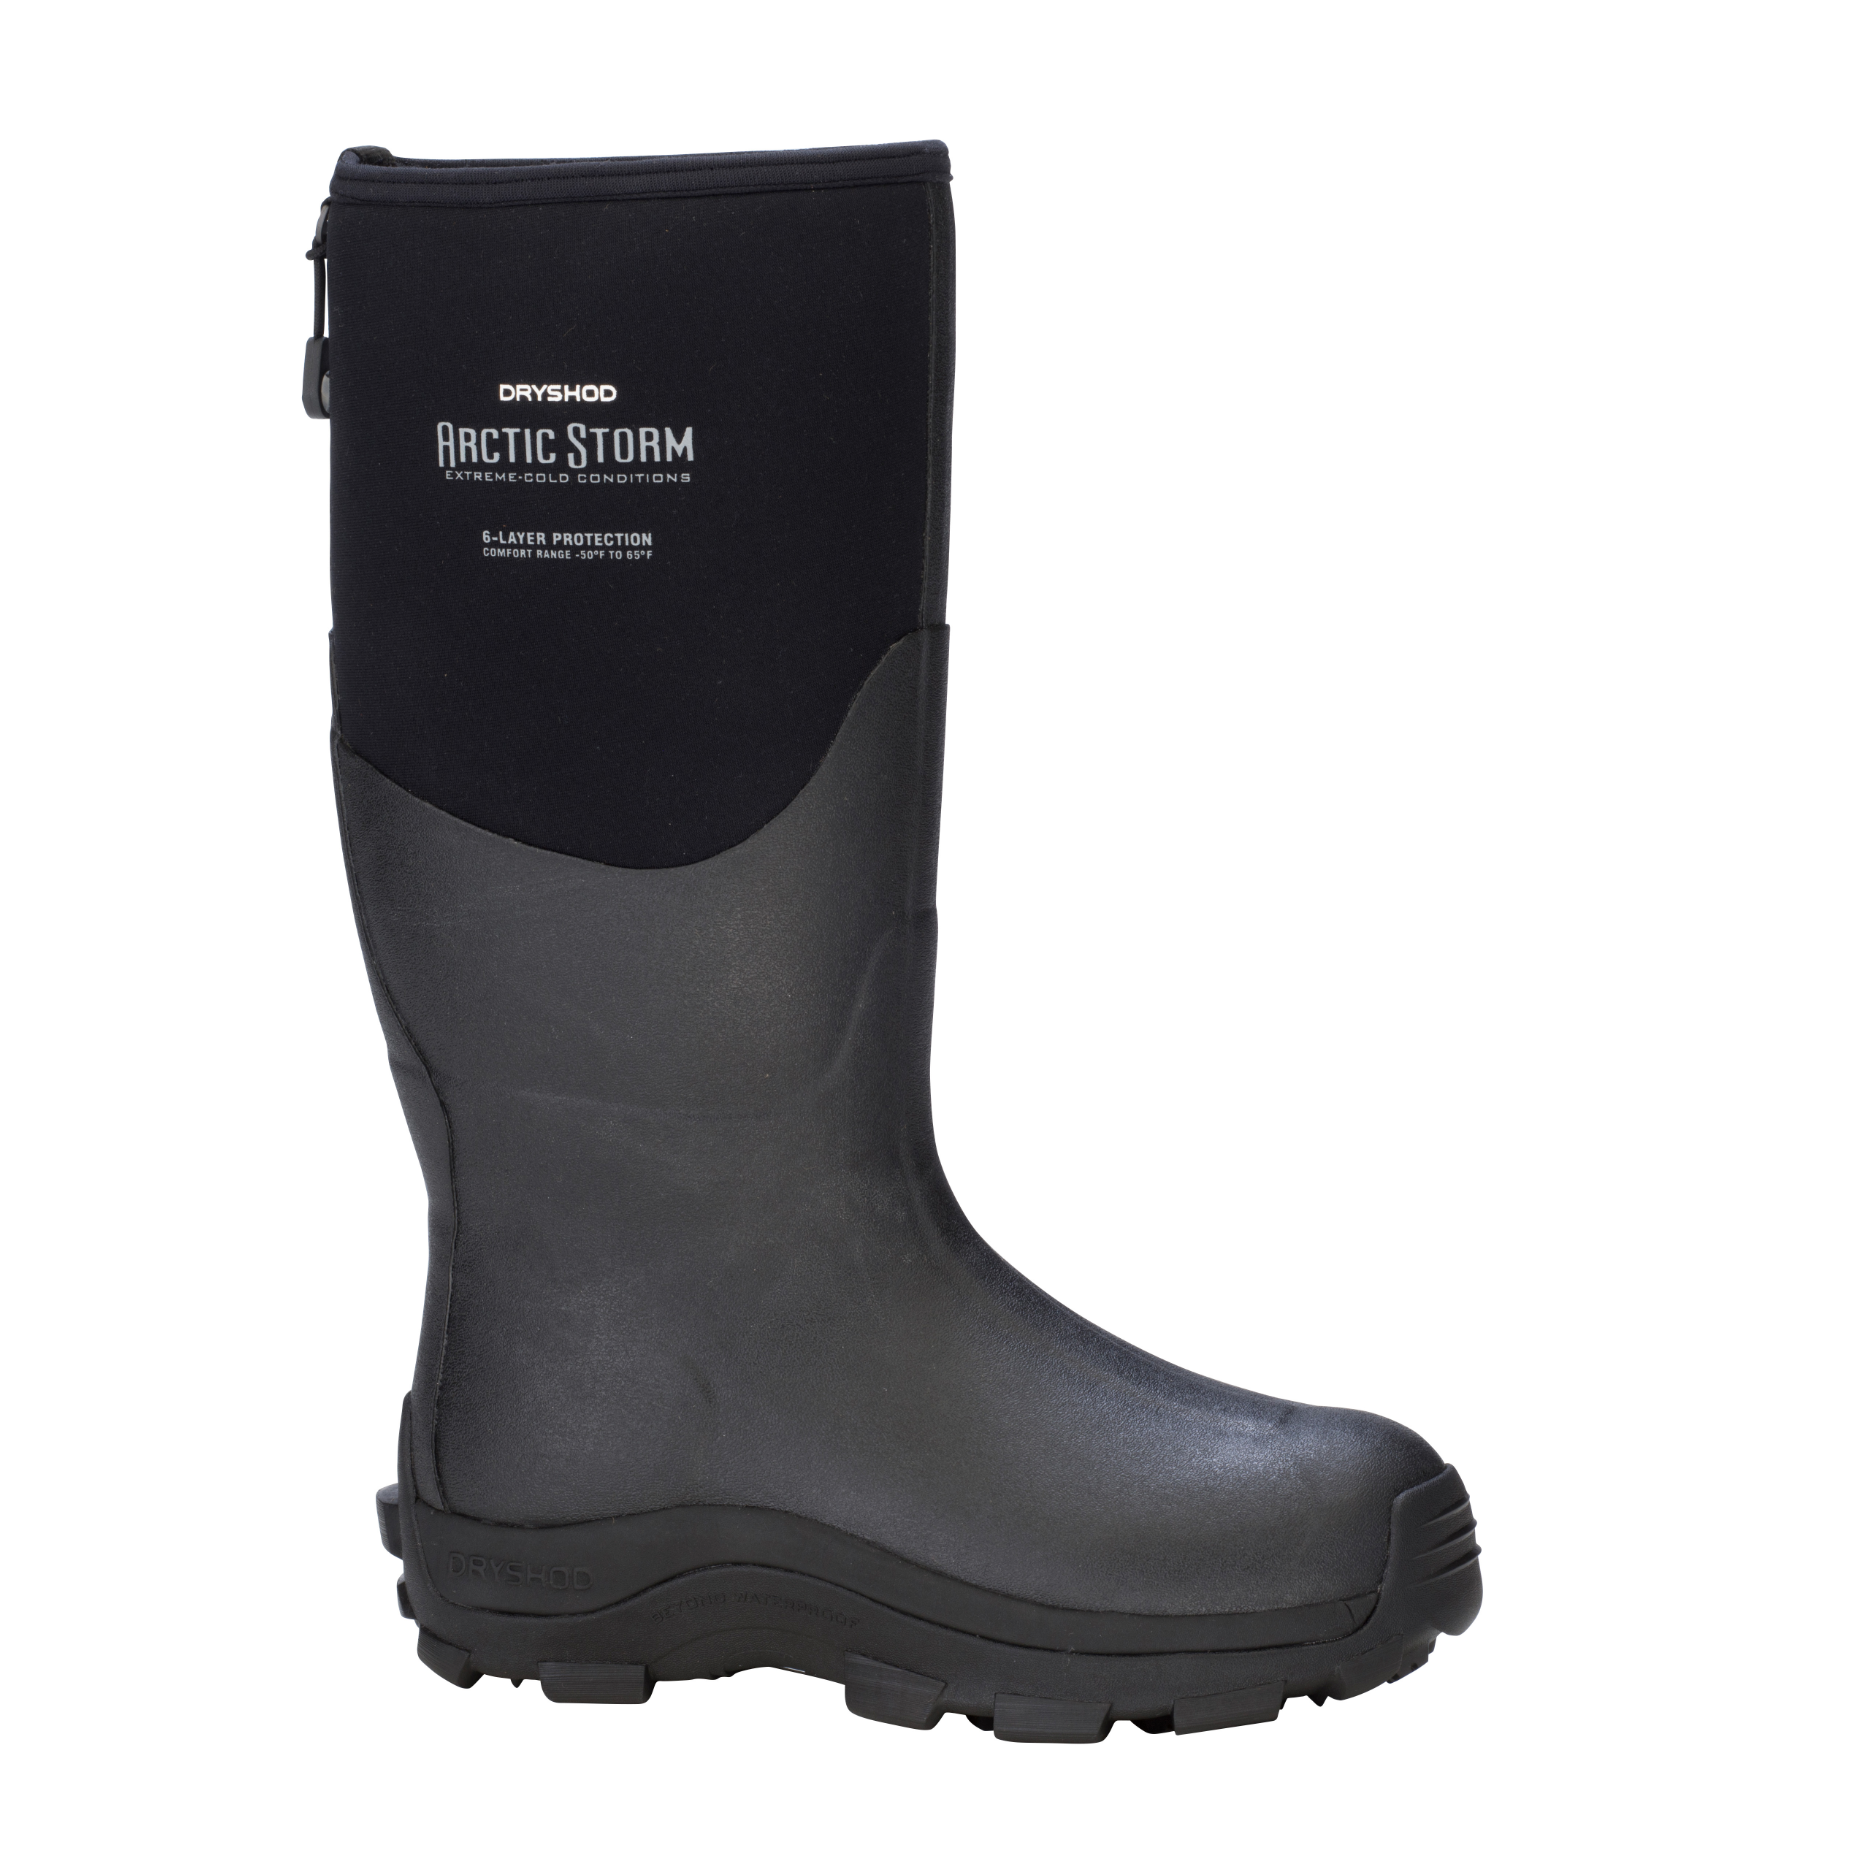 DryShod Arctic Storm Men’s Winter Boot